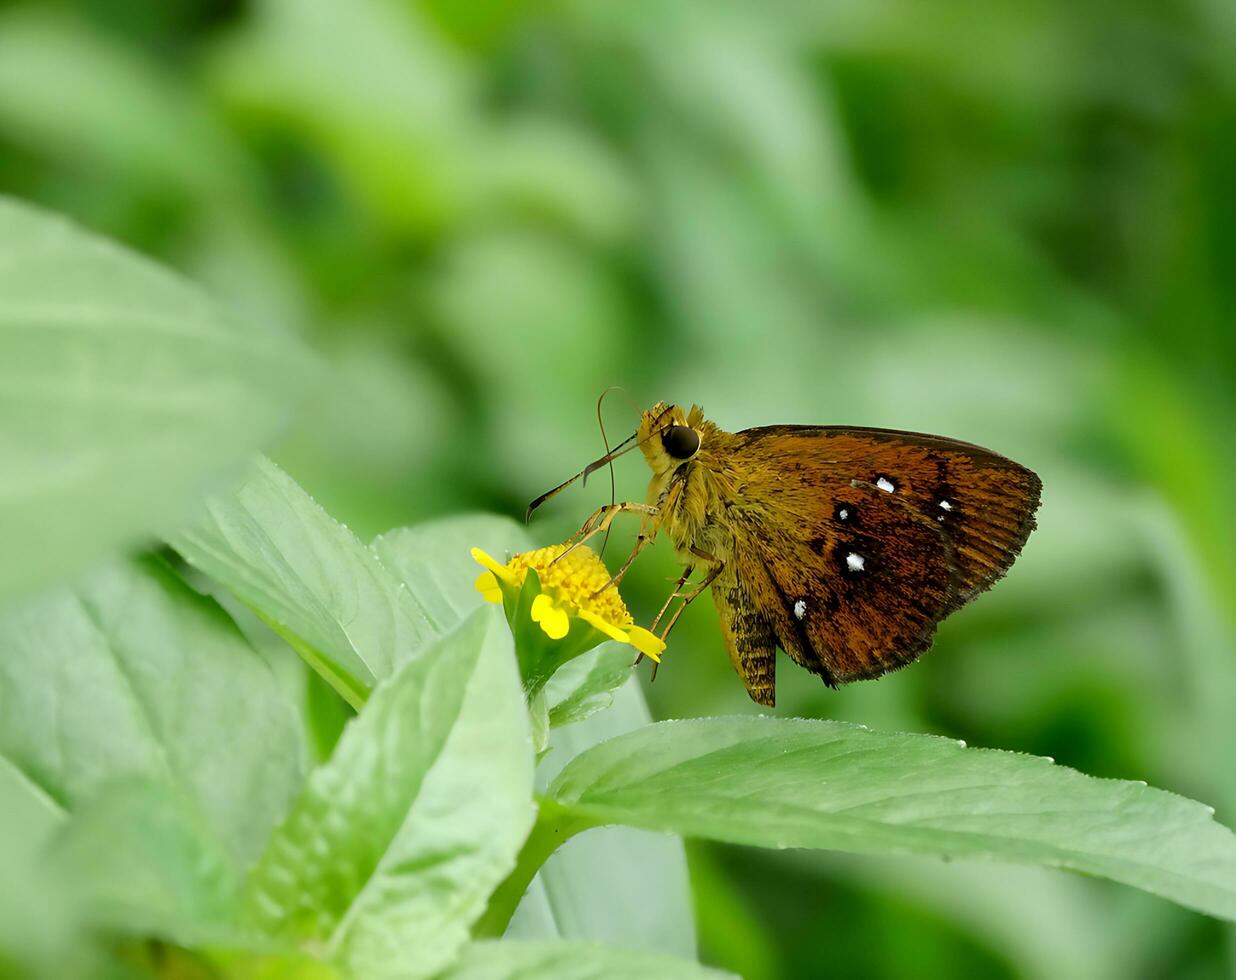 Monarch, schön Schmetterling Fotografie, schön Schmetterling auf Blume, Makro Fotografie, kostenlos Foto